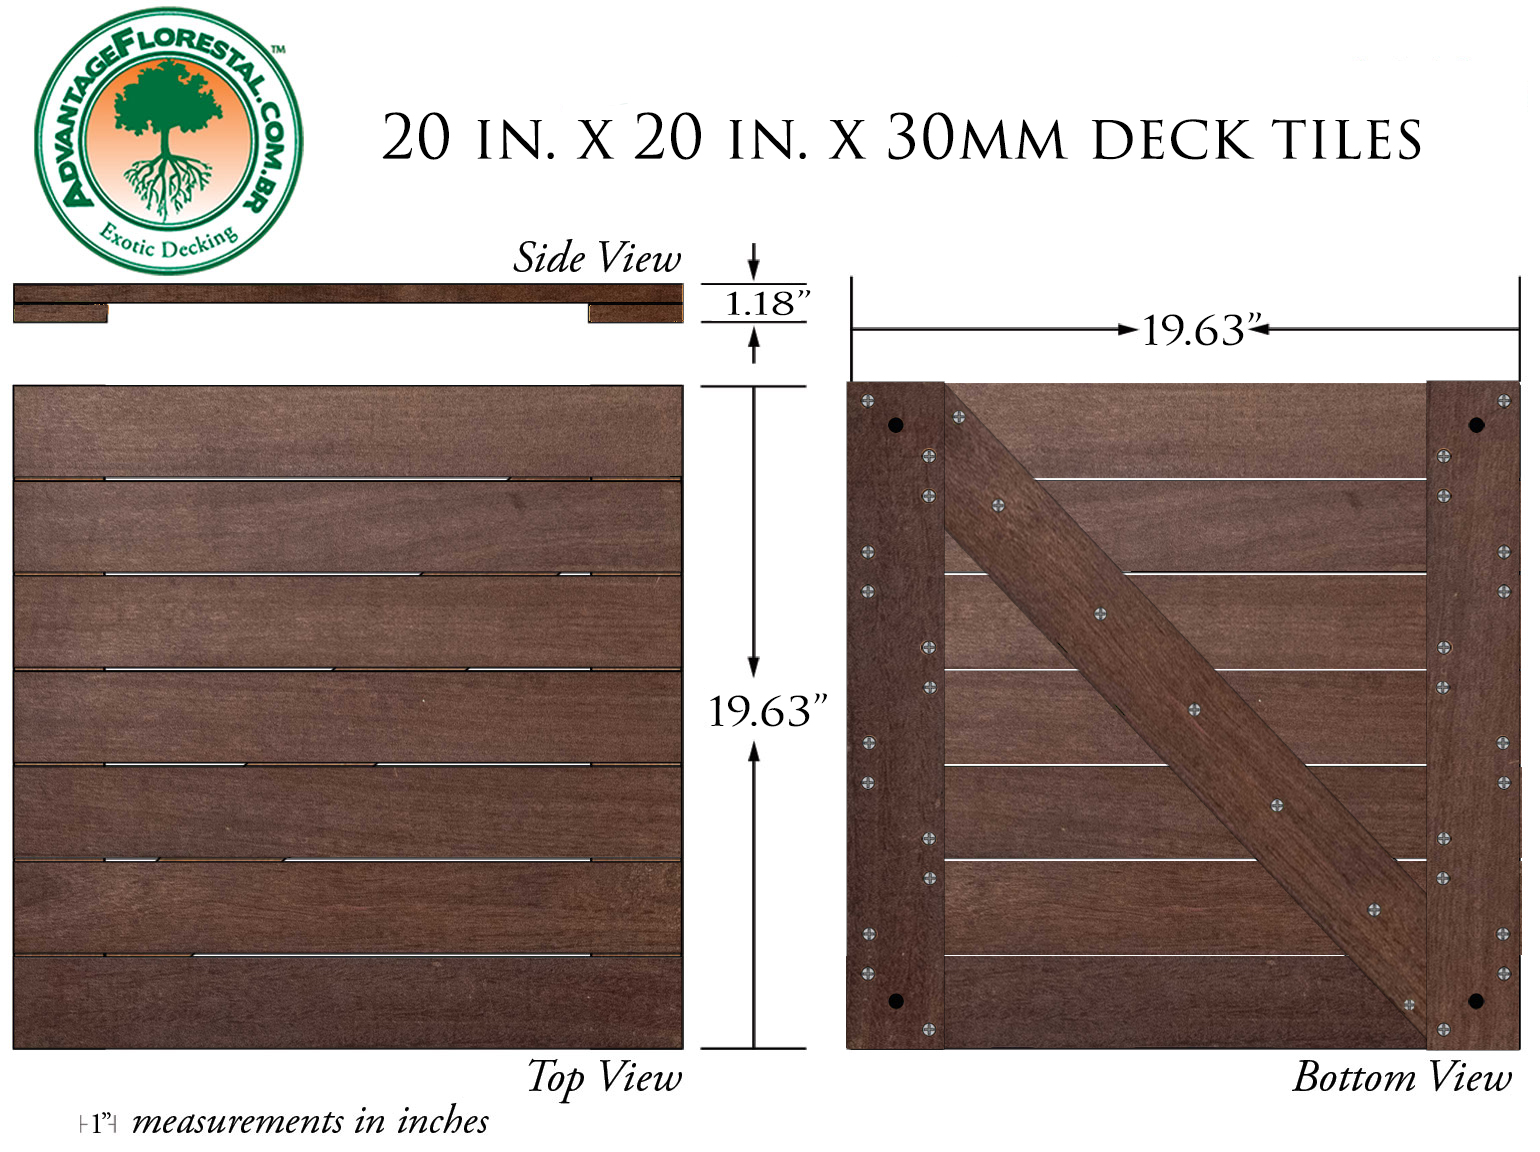 IPE Deck Tile 20 in. x 20 in. x 30mm